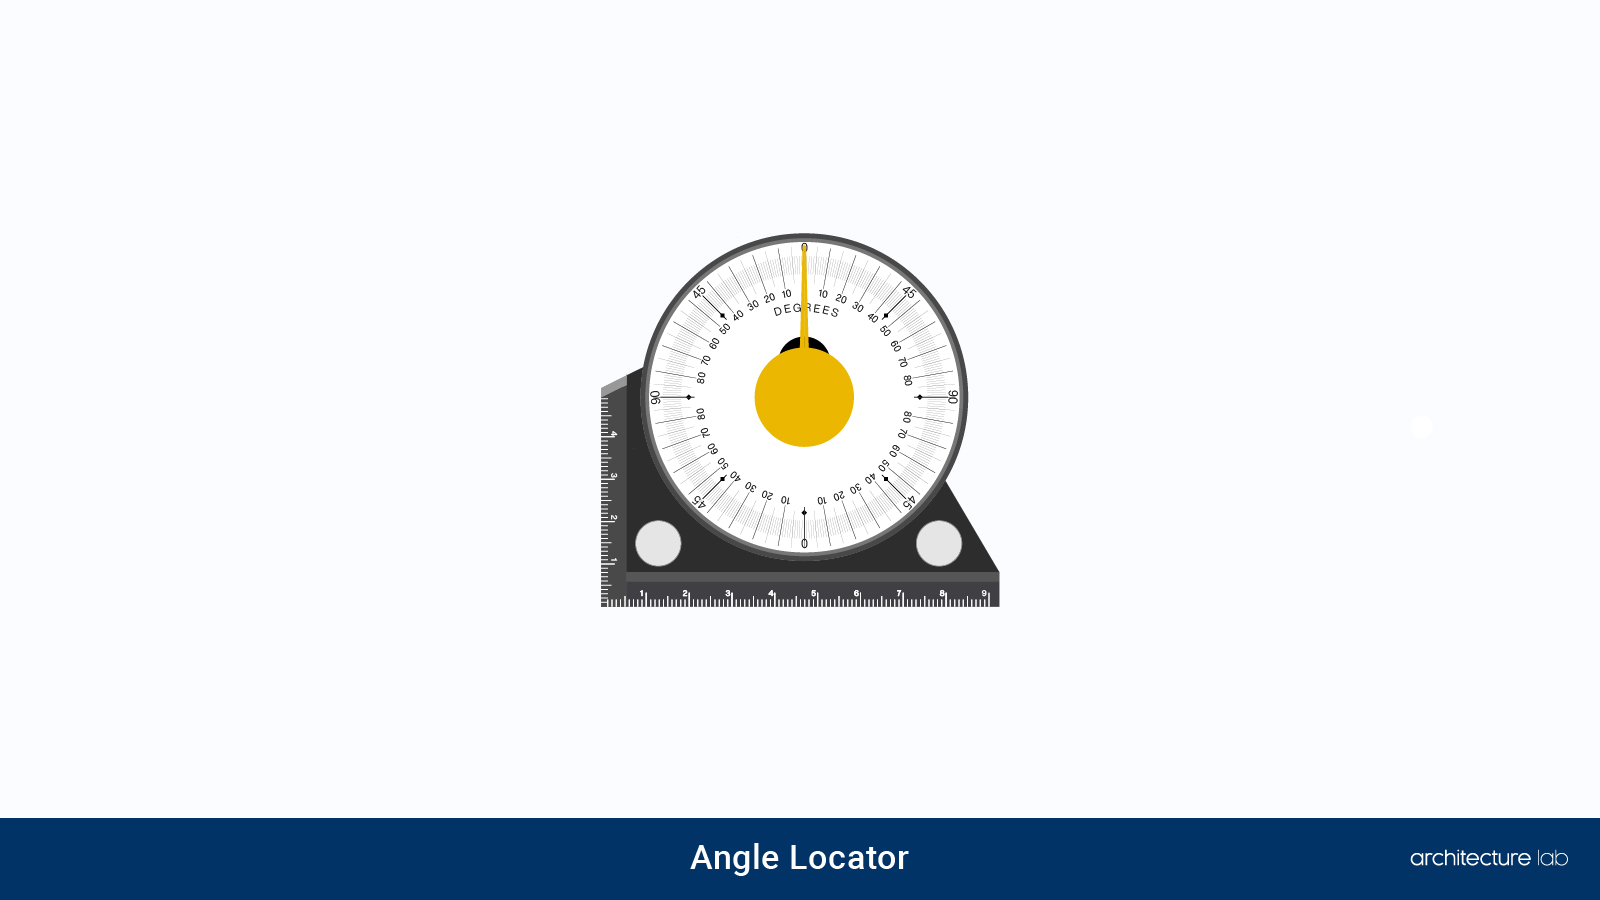 1. Angle locator